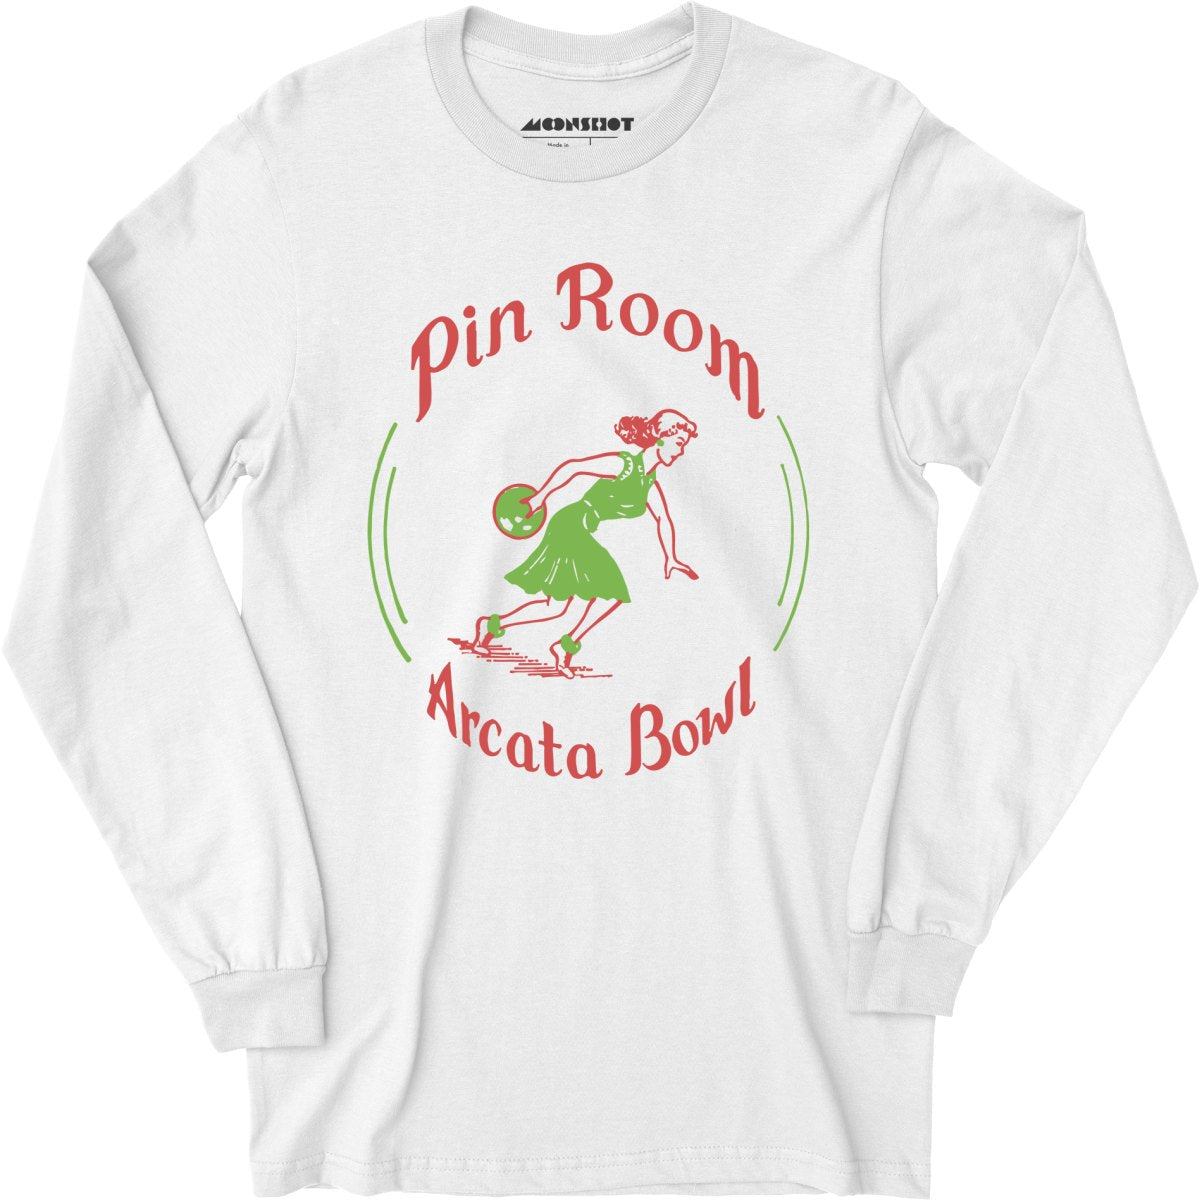 Arcata Bowl Pin Room - Arcata, CA - Vintage Bowling Alley - Long Sleeve T-Shirt